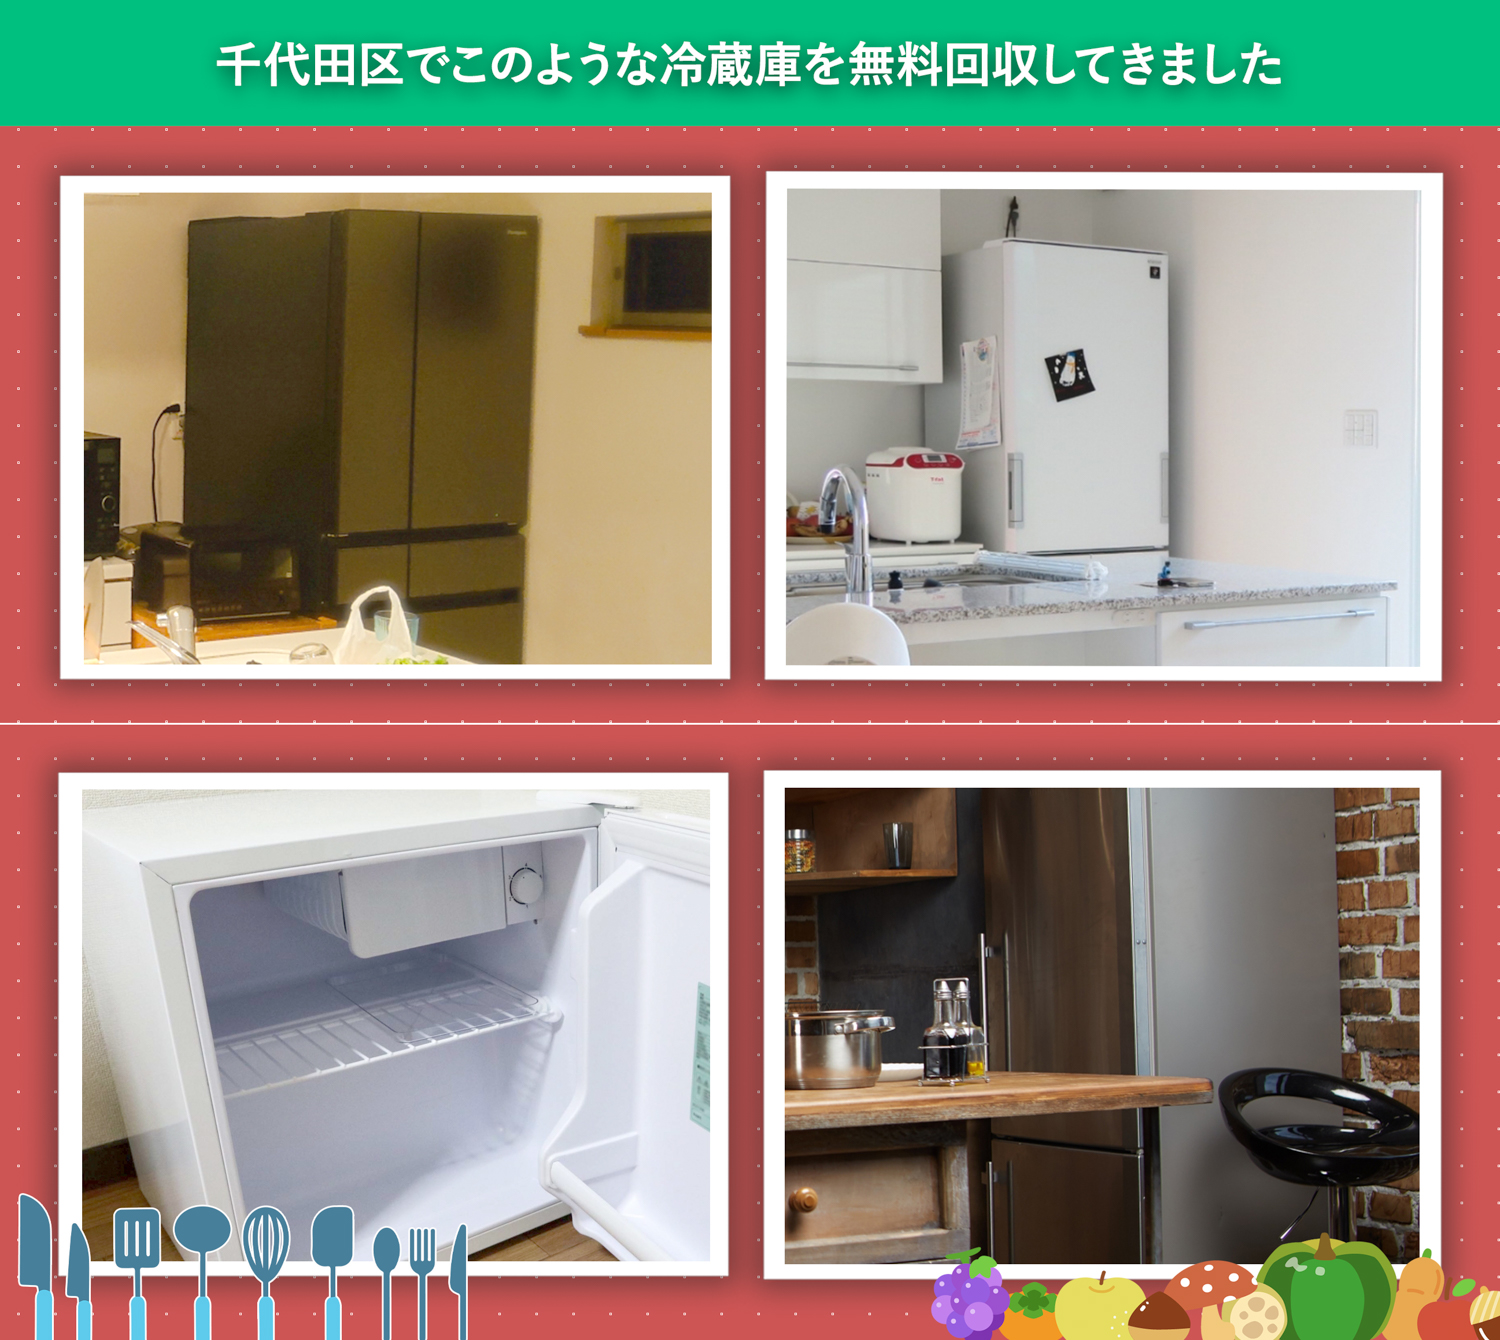 千代田区でこのような冷蔵庫を無料回収してきました。